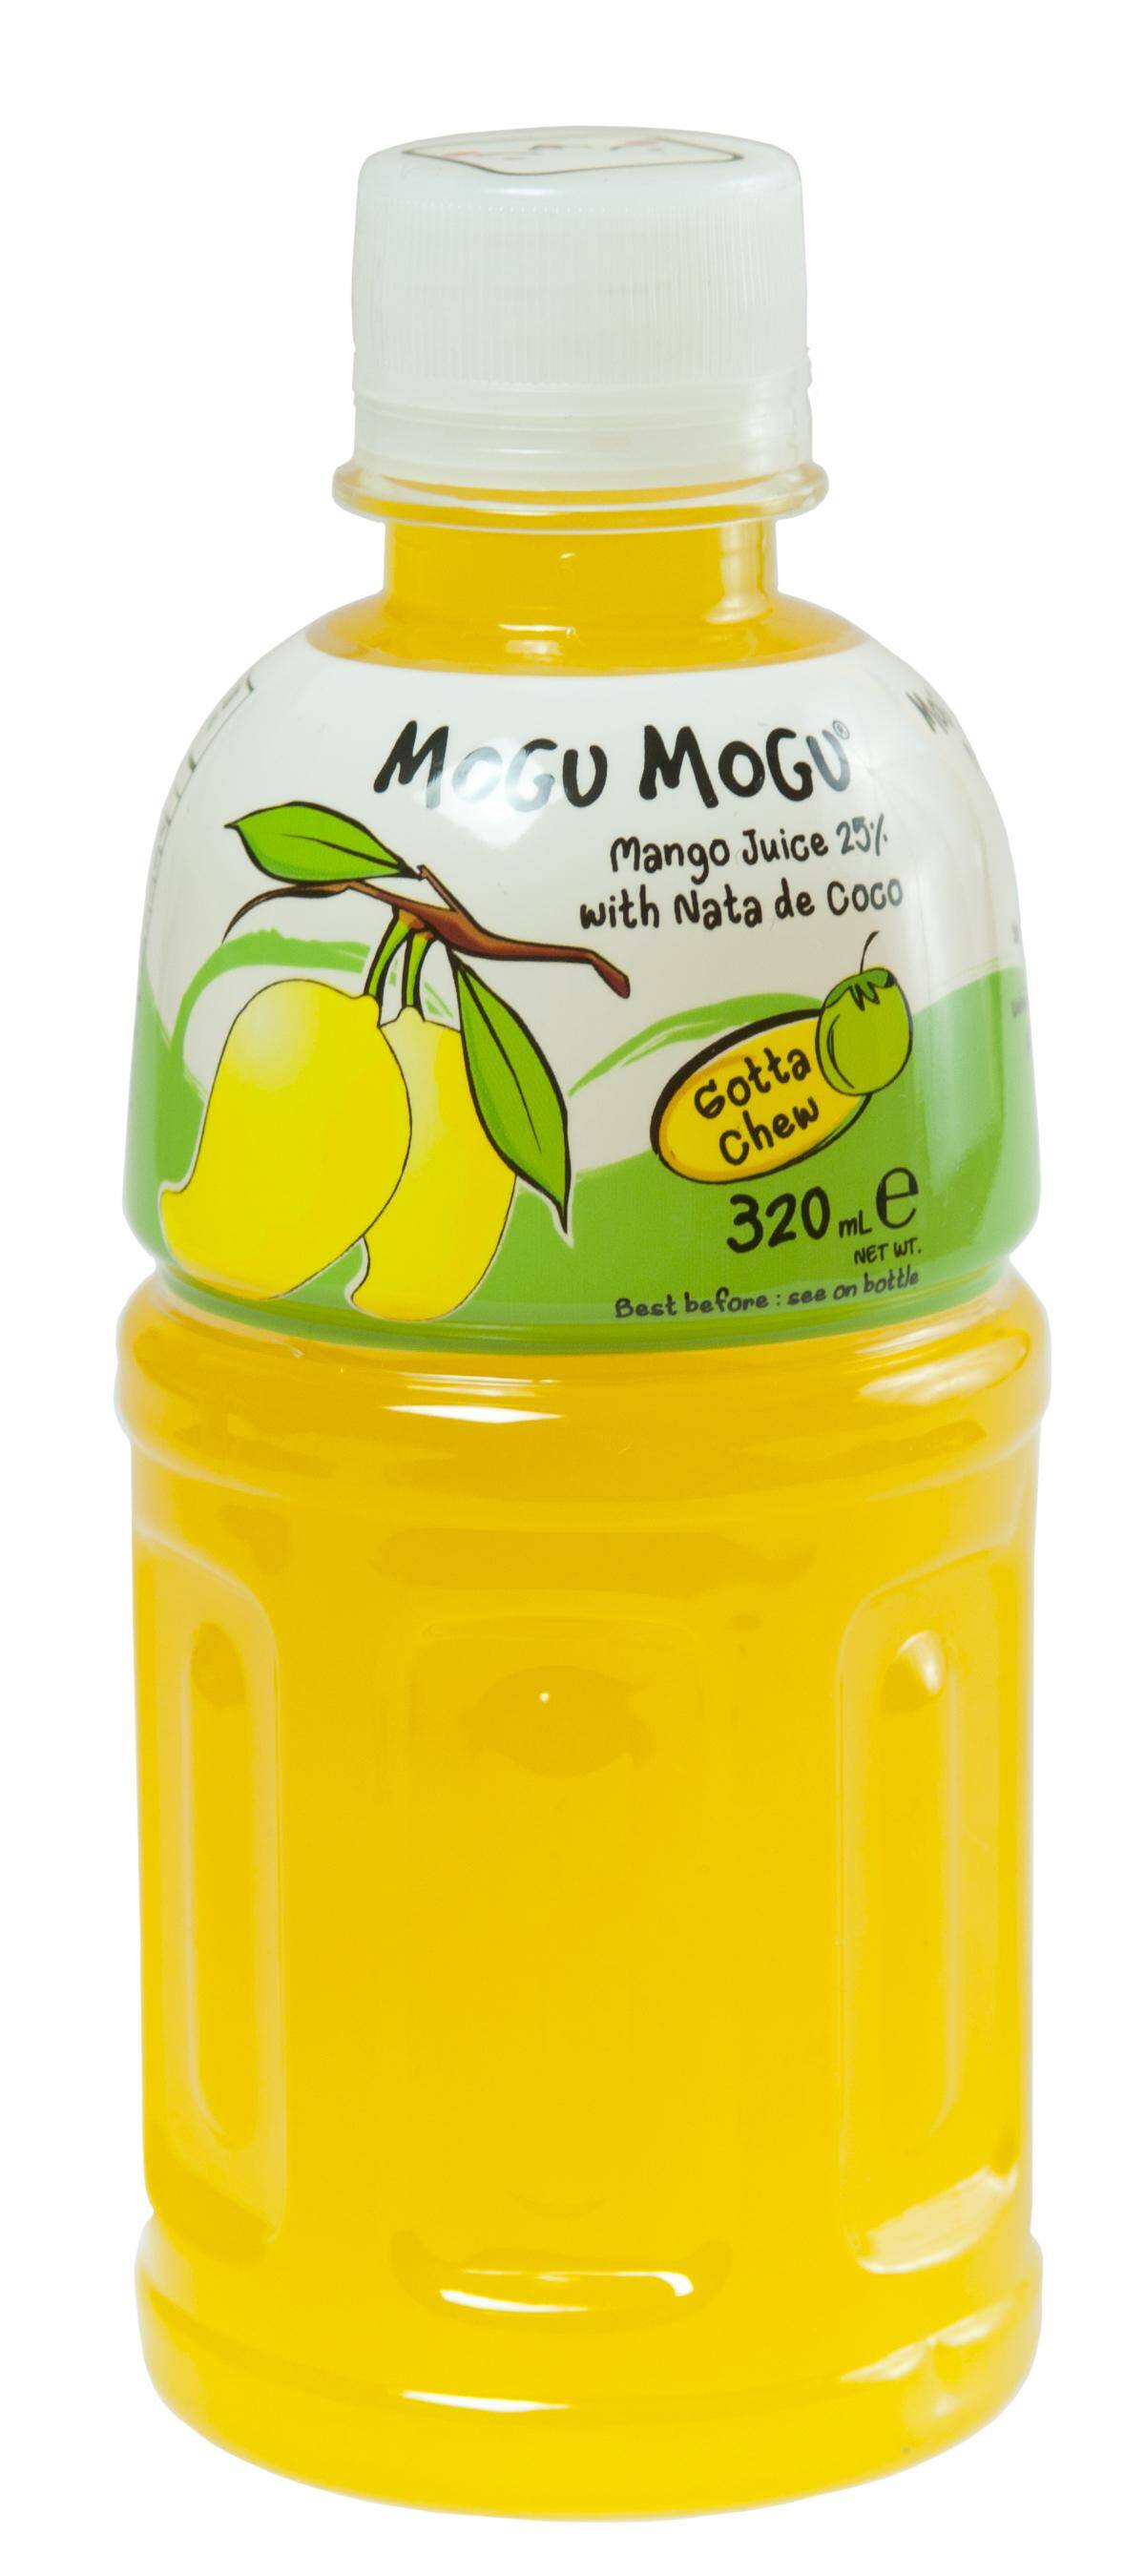 Mogu Mogu Mango nata de coco 320ml/24